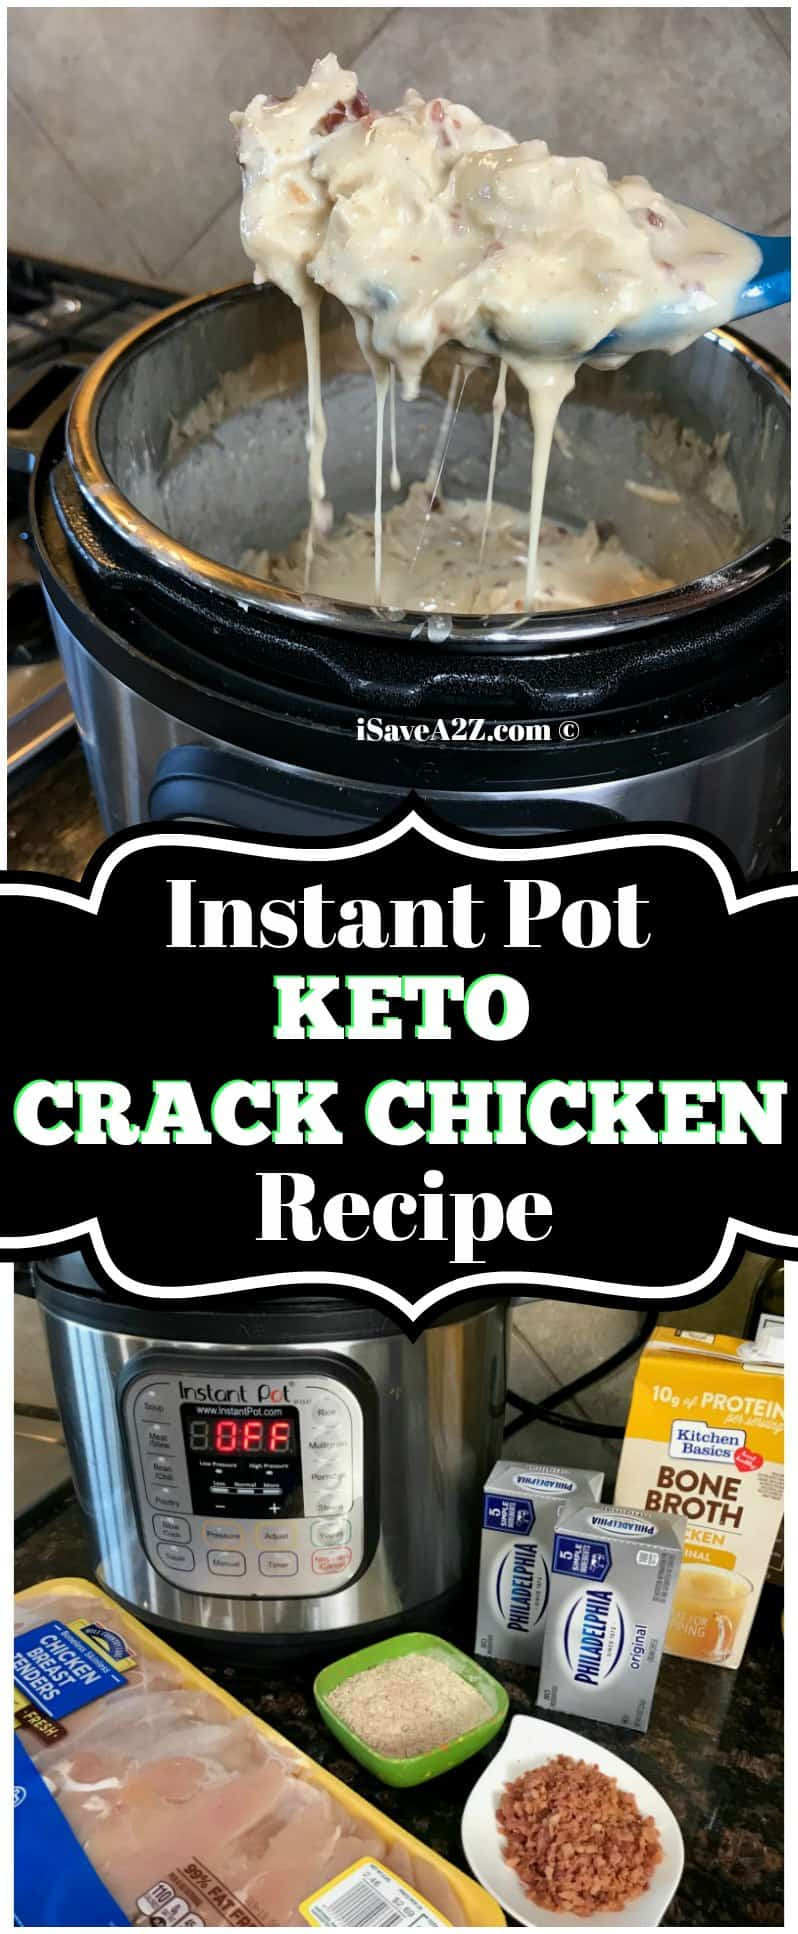 Instapot Keto Recipes Chicken
 Instant Pot Keto Crack Chicken Recipe iSaveA2Z